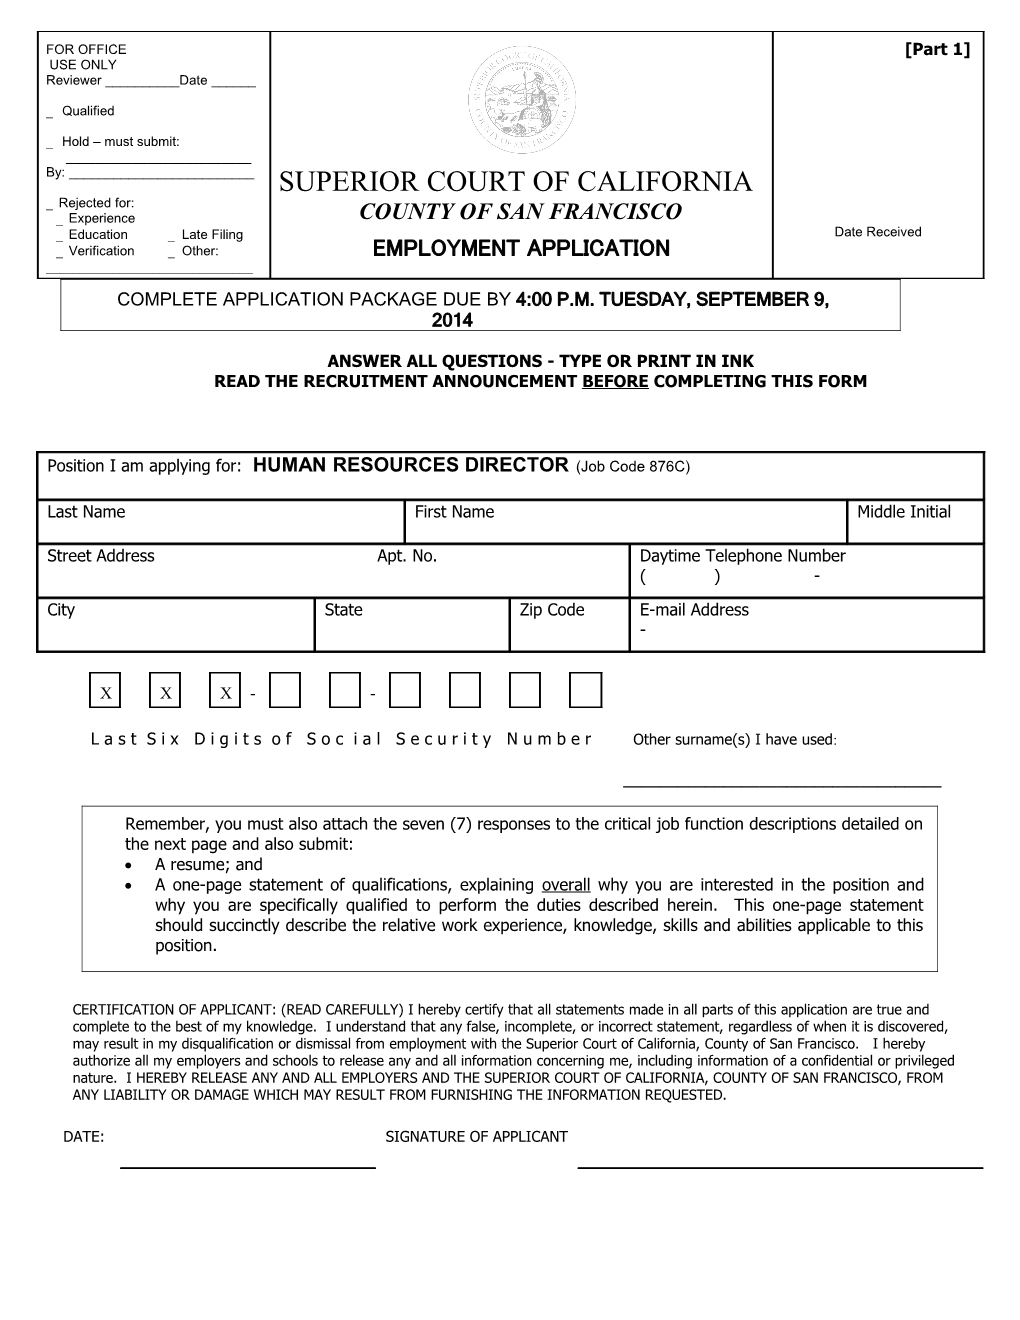 Superior Court of California s1